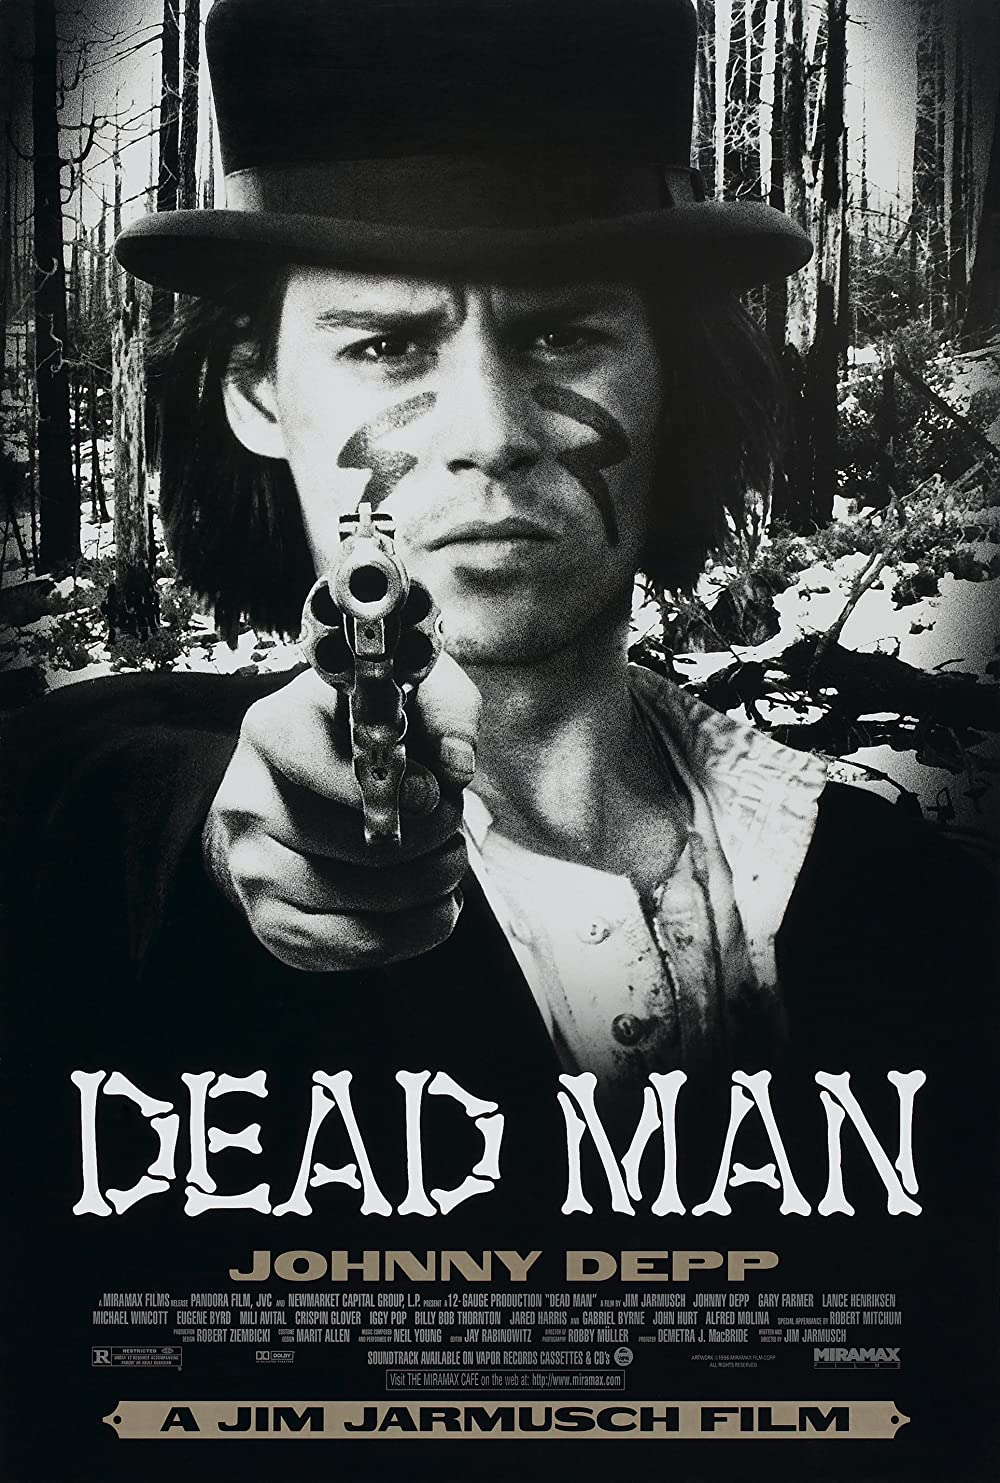 Filmbeschreibung zu Dead Man